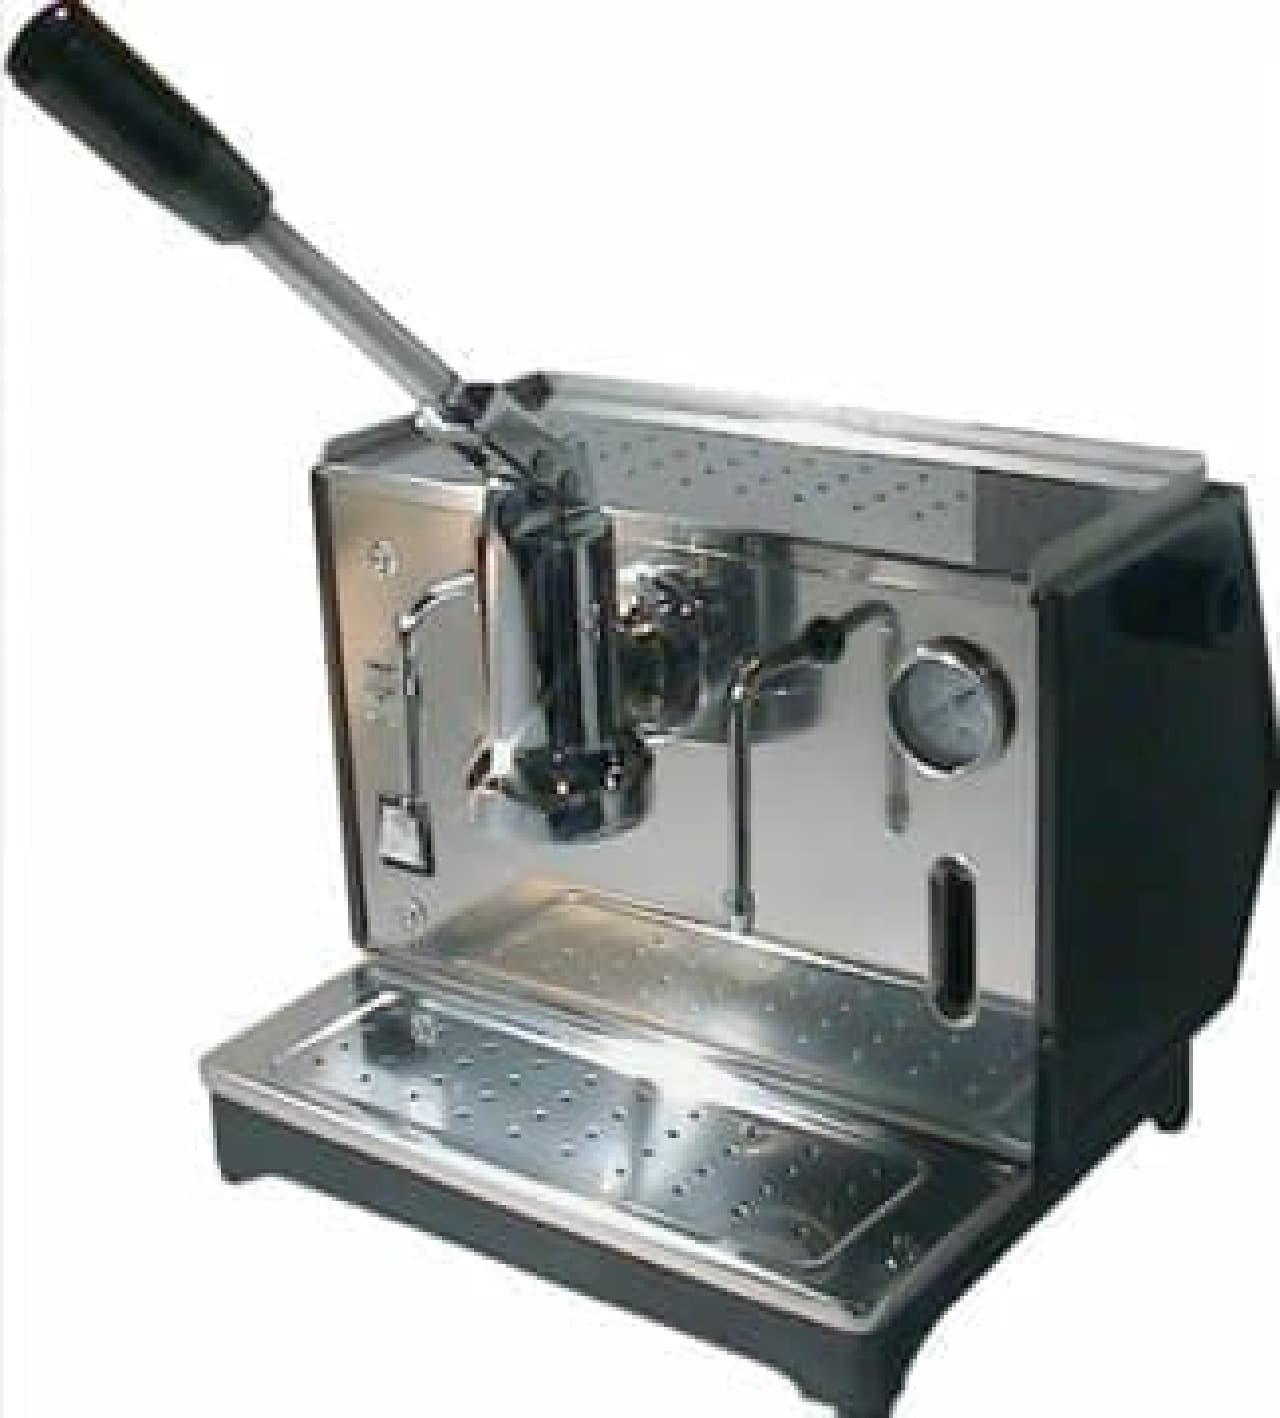 Classic lever-type espresso machine